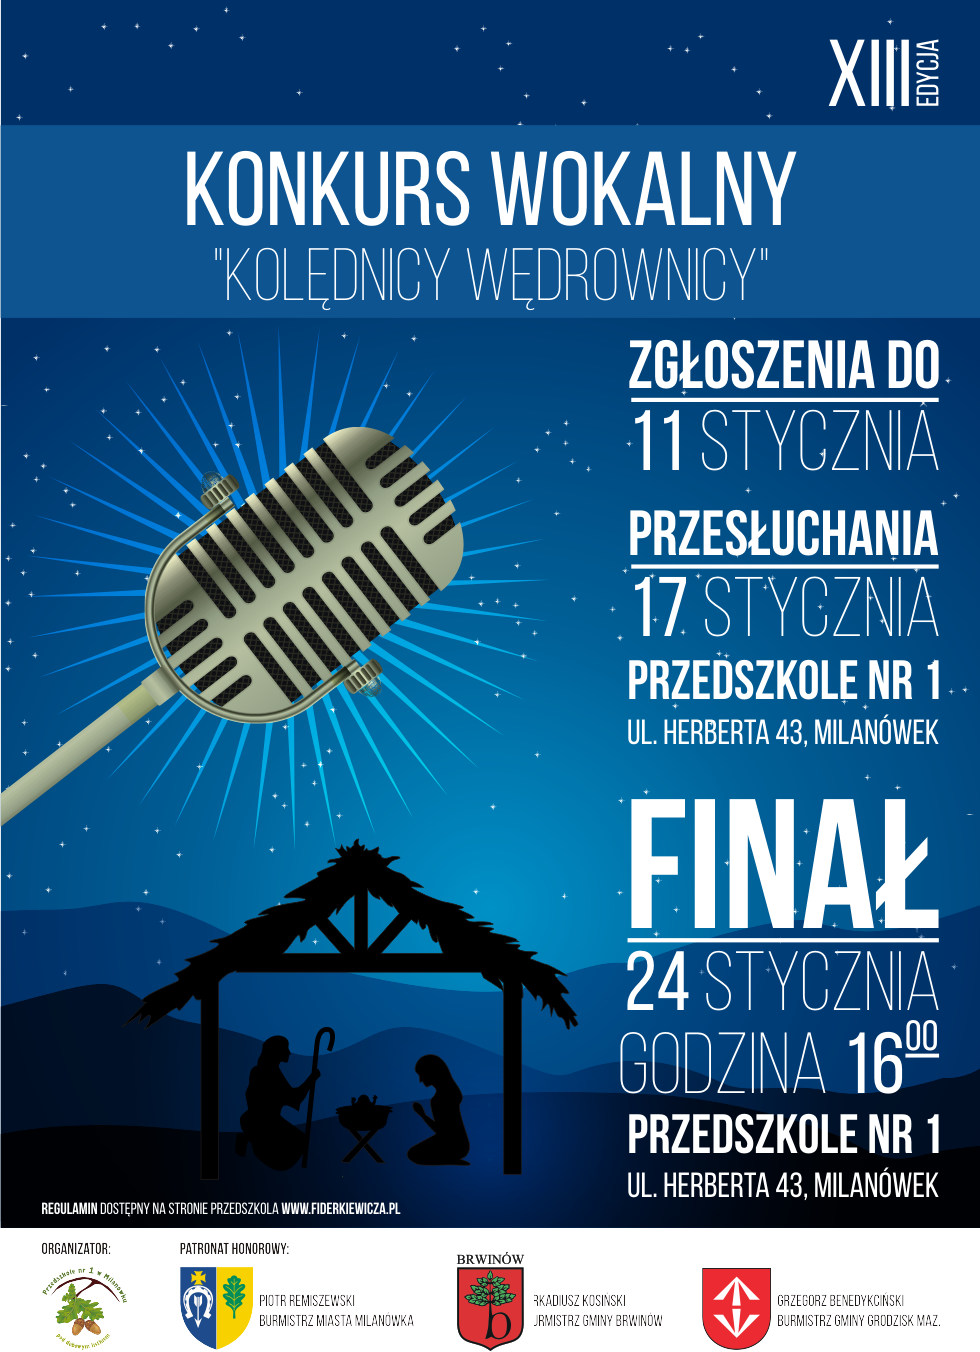 Plakat informujący o konkursie "Kolędnicy Wędrownicy"